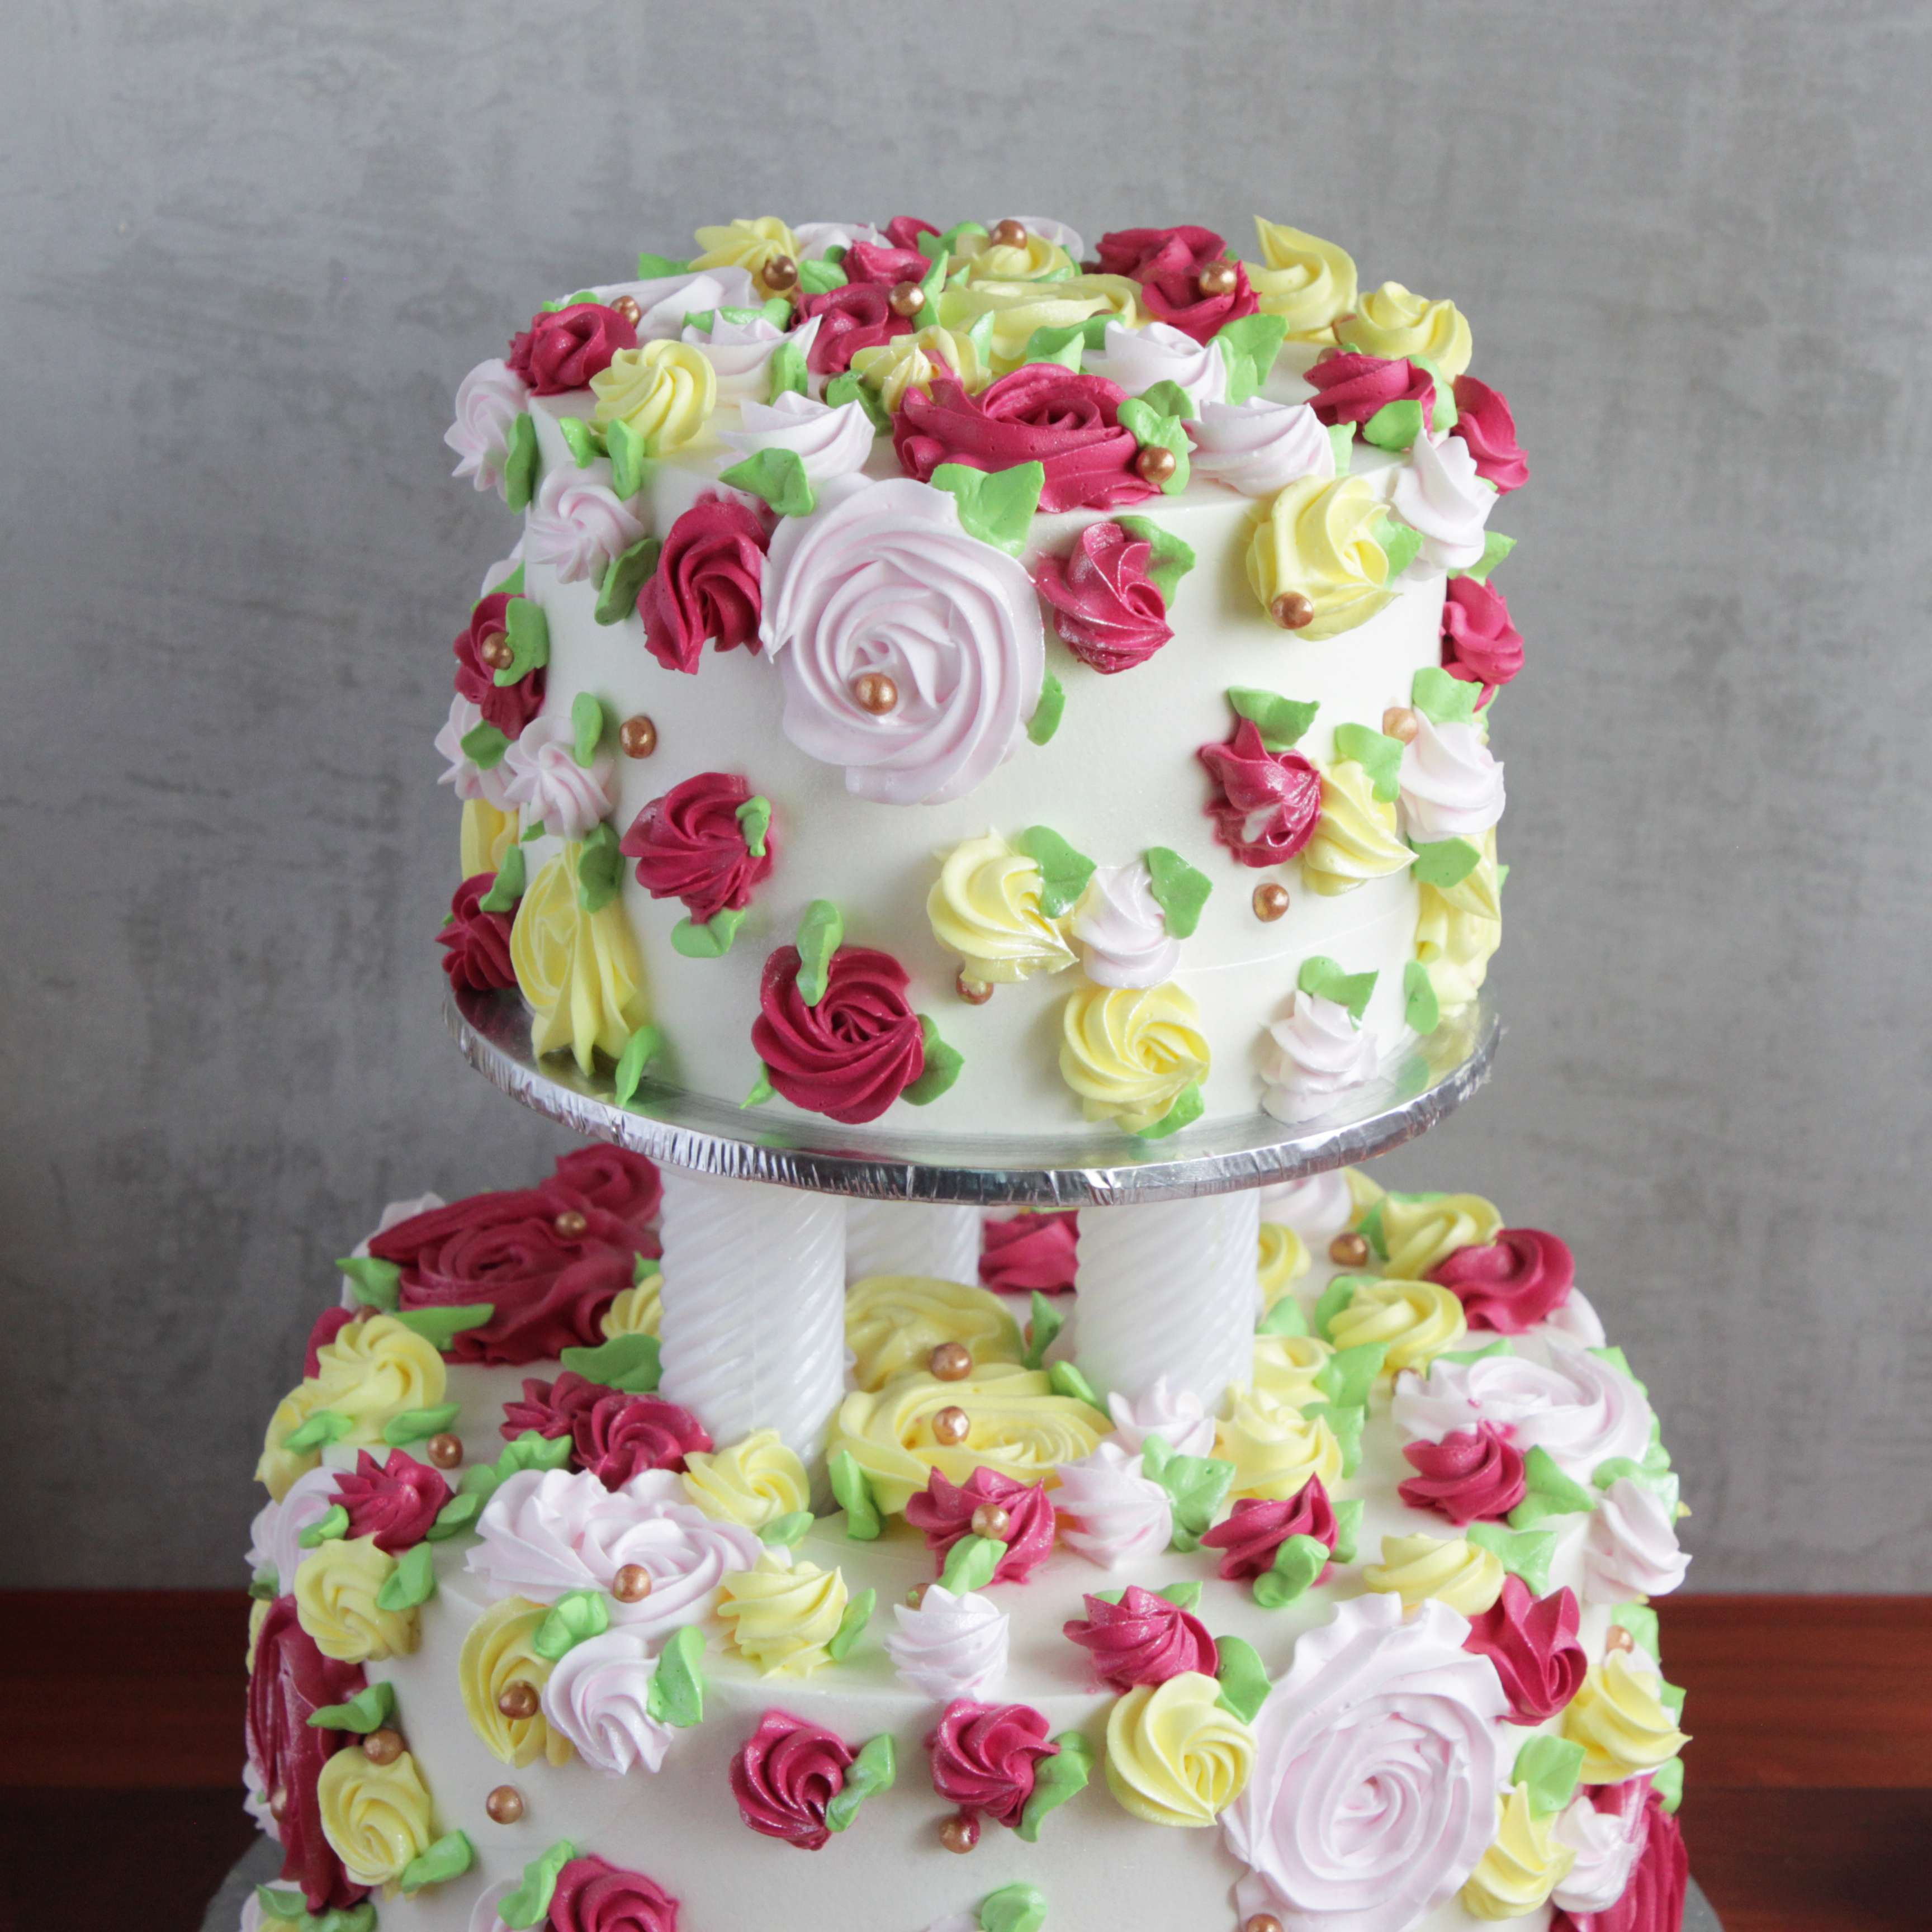 Two Tier Floral Designer Truffles Cake 3 Kg – Endbazar